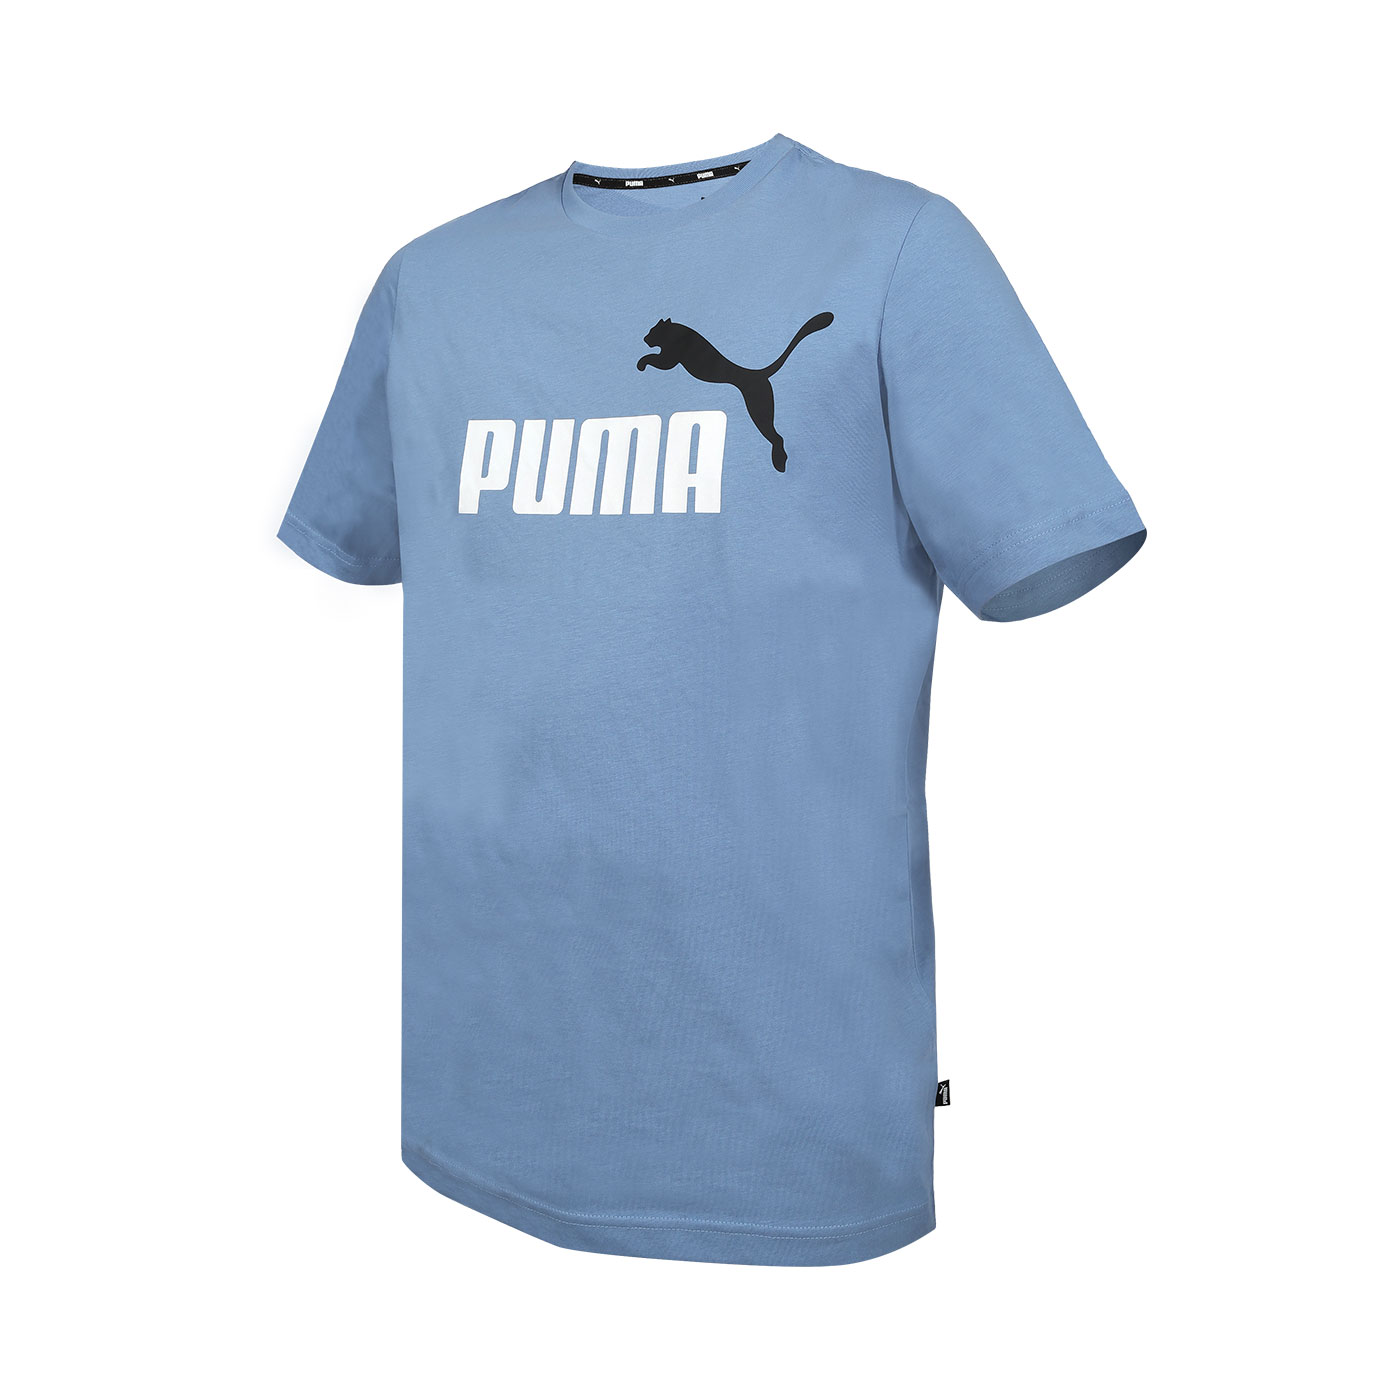 PUMA 男款基本系列ESS+ 2 Col短袖T恤  58675920 - 靛藍黑白